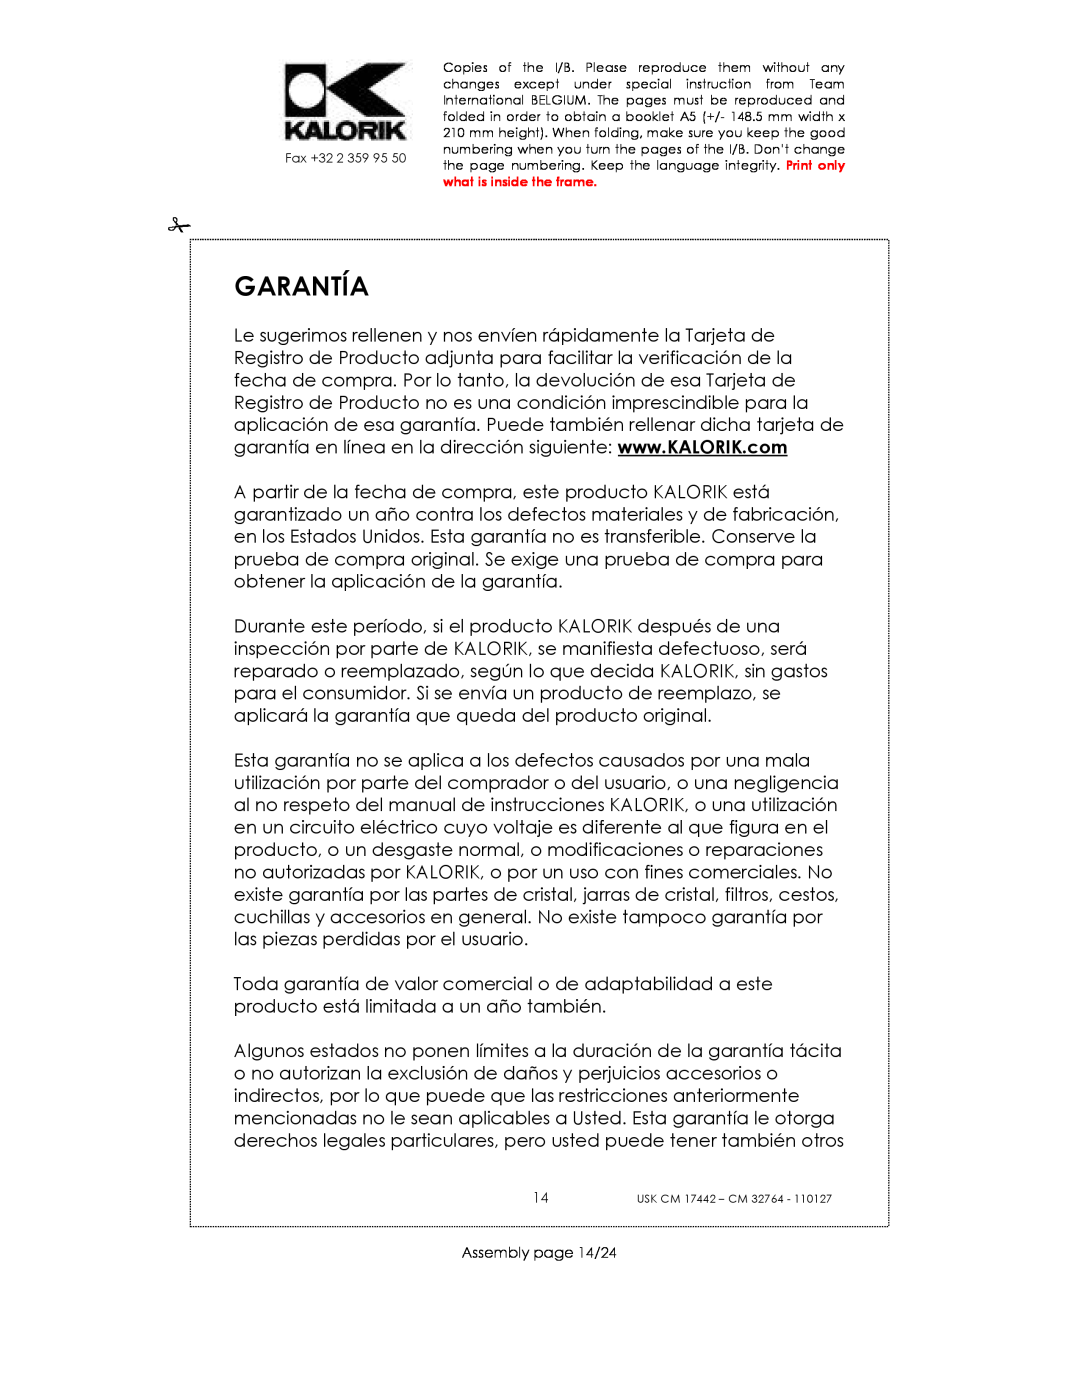 Kalorik USK CM 17442, USK CM 32764 manual Garantía, Assembly page 14/24 